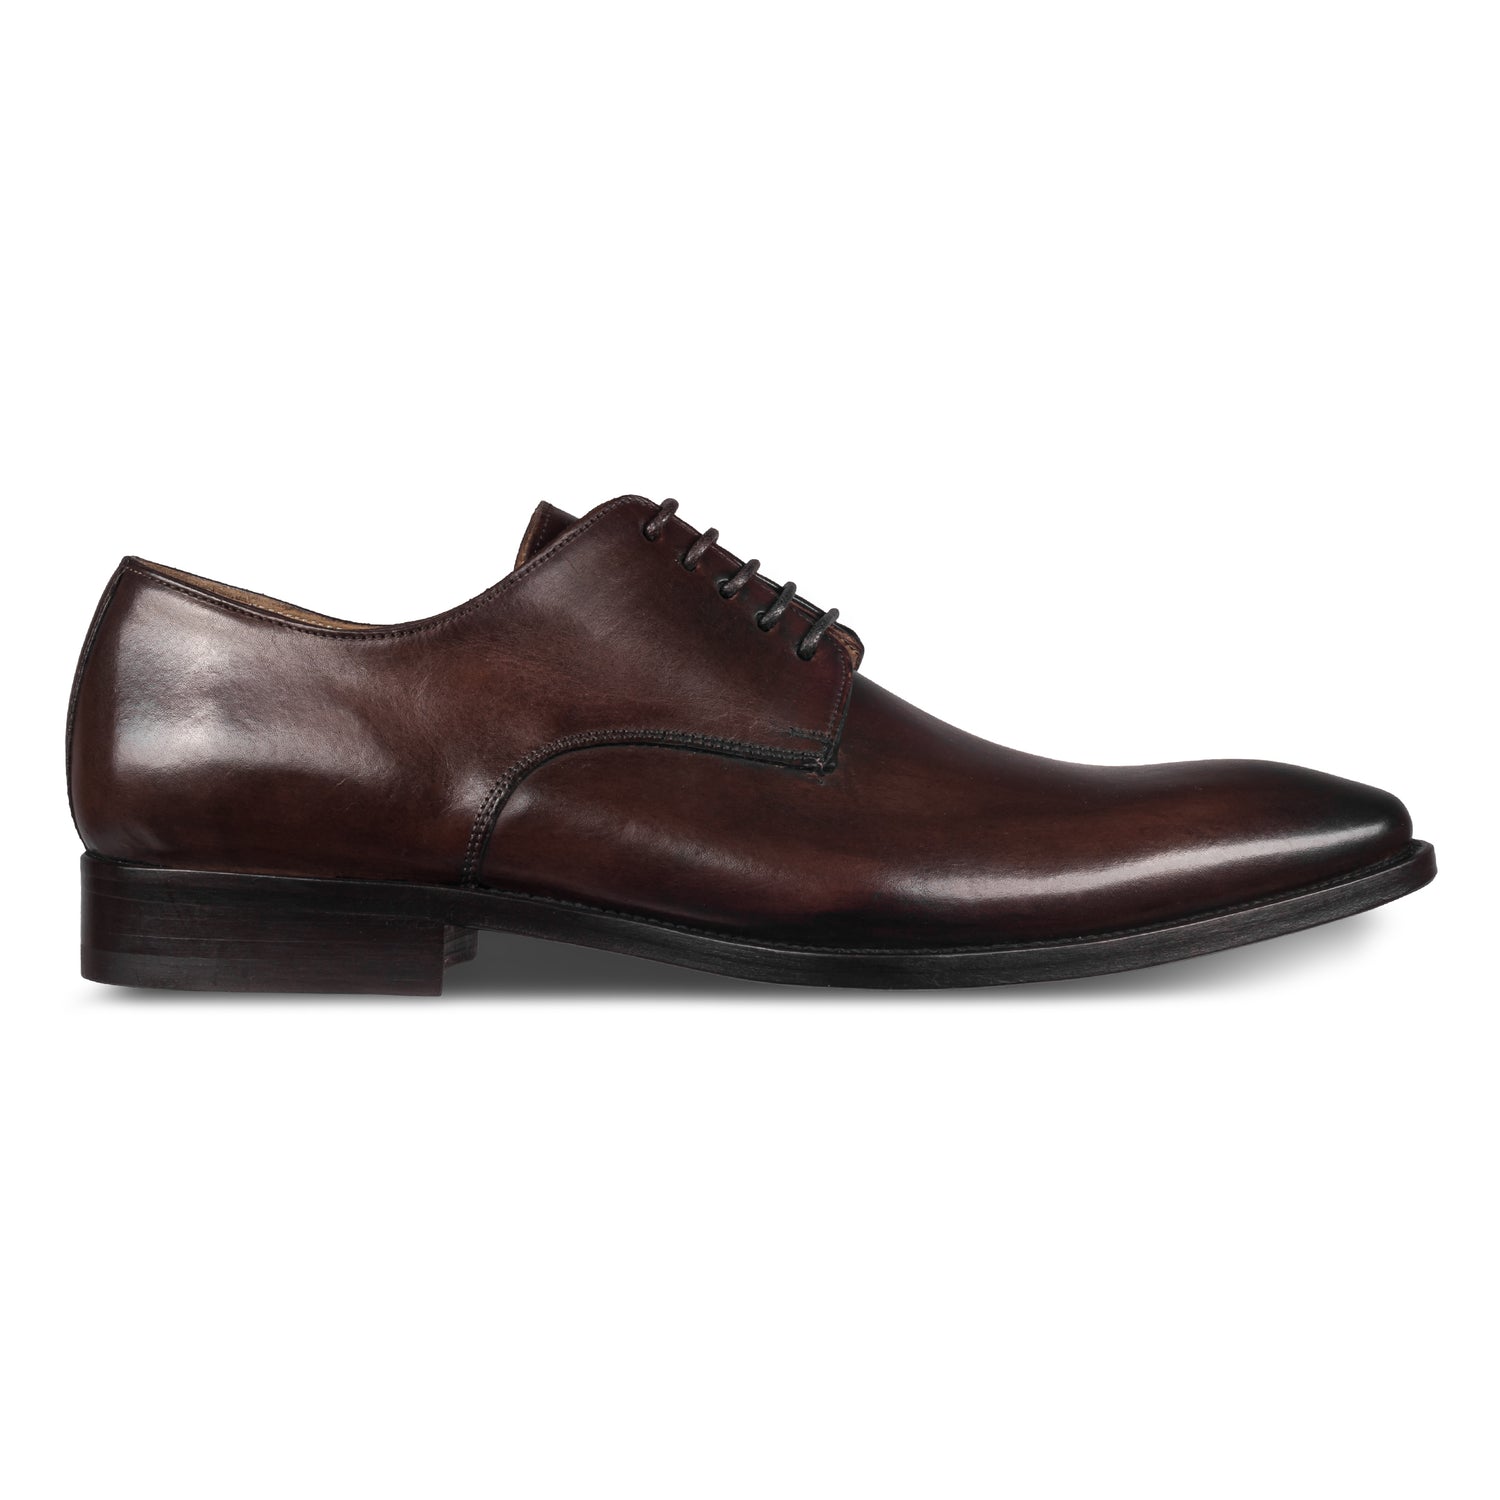 BRECOS – Italienische Herren Anzugschuhe, Plain Derby Schnürer in dunkel braun. Handgefertigt und durchgenäht. Seitliche Ansicht der Außenseite rechter Schuh.